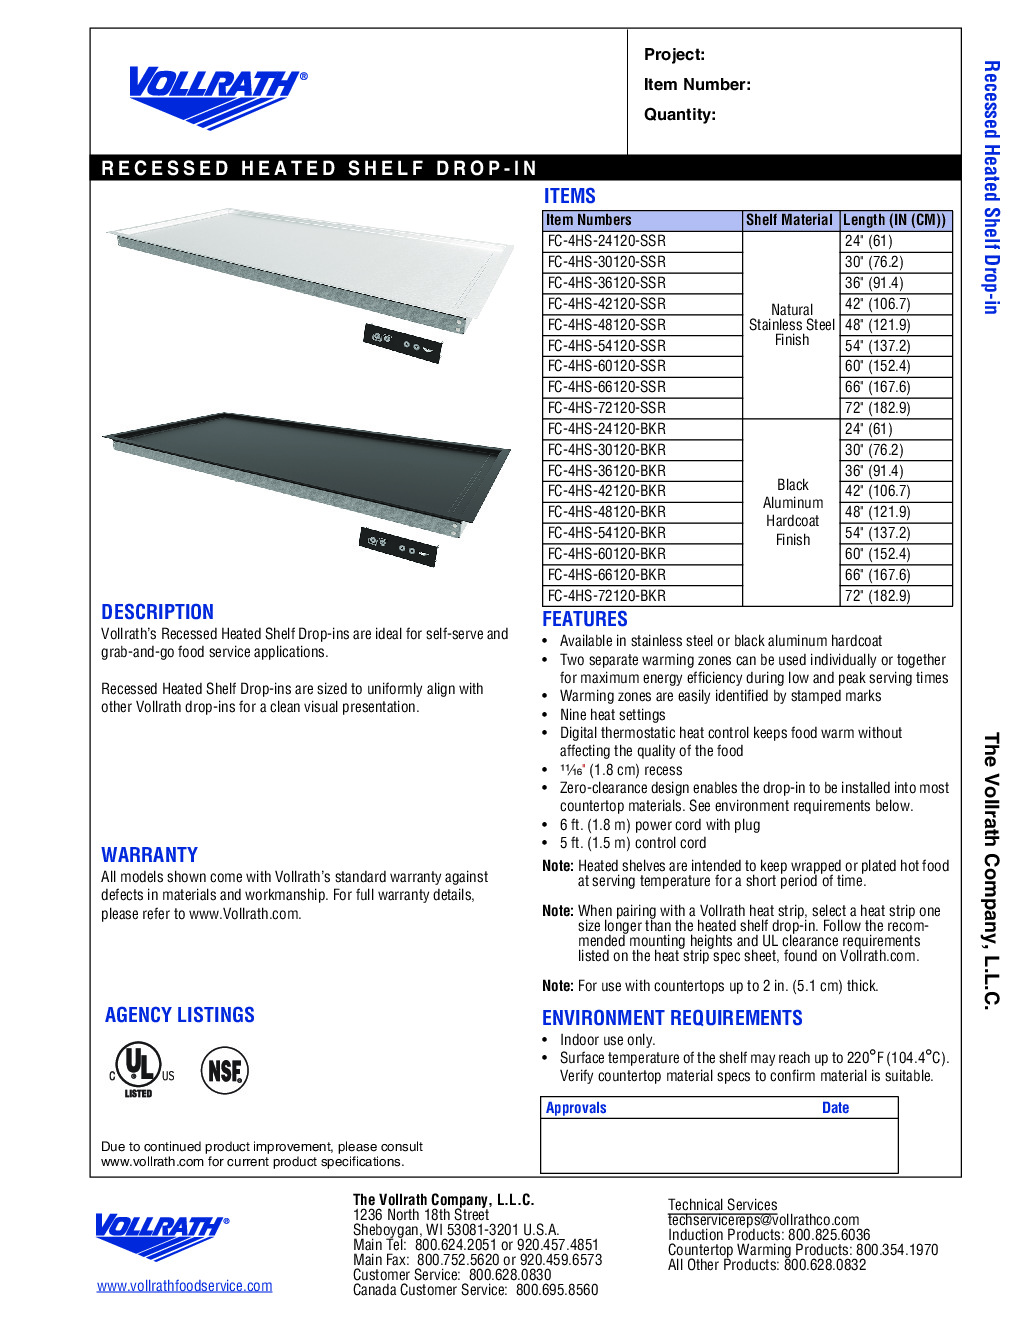 Vollrath FC-4HS-72120-BKR Heated Shelf Food Warmer